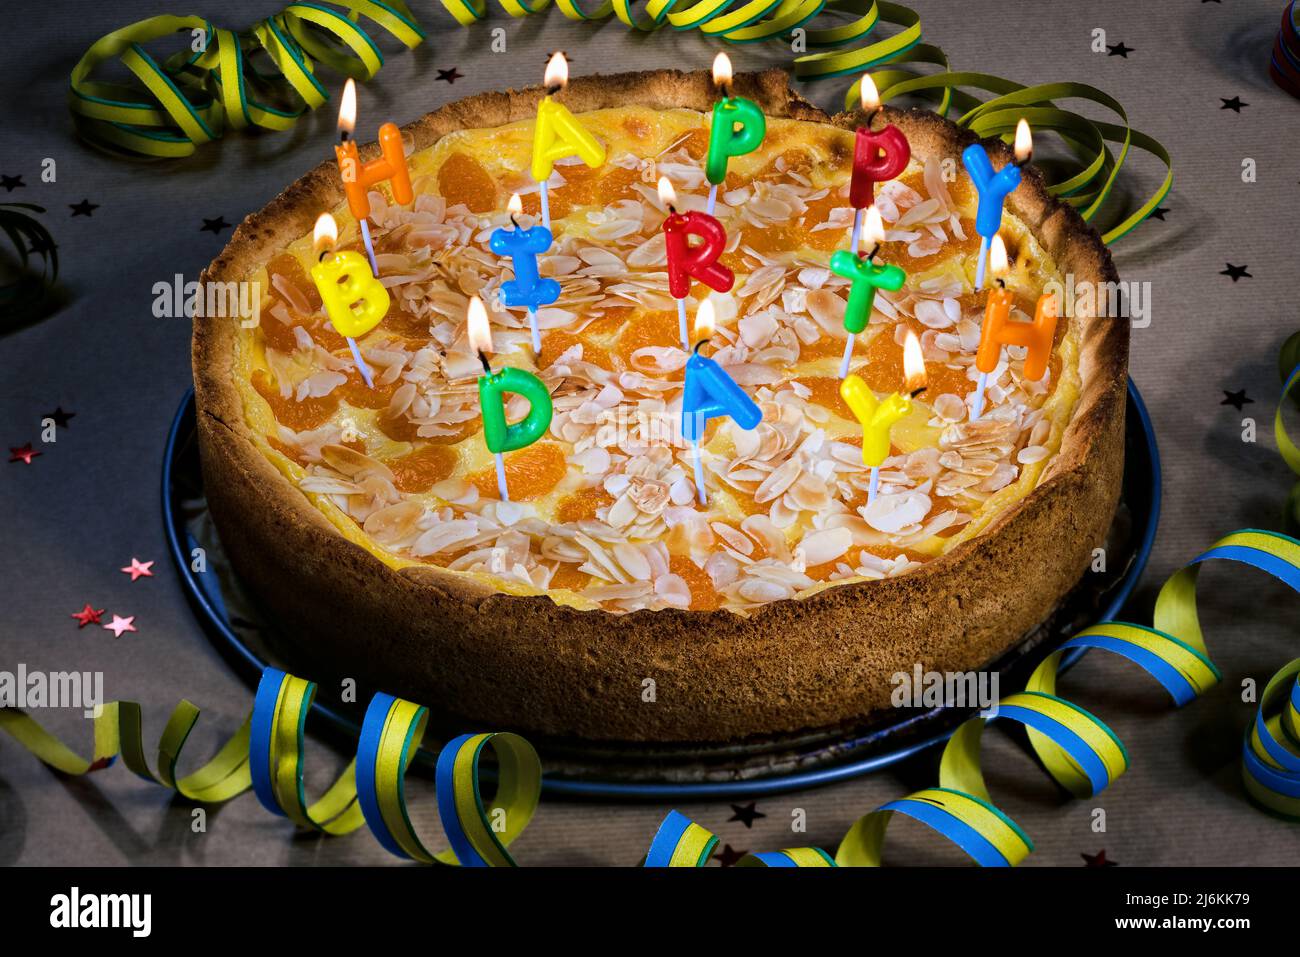 Buon compleanno torta con candele accese congratulazioni per la decorazione della tabella Foto Stock